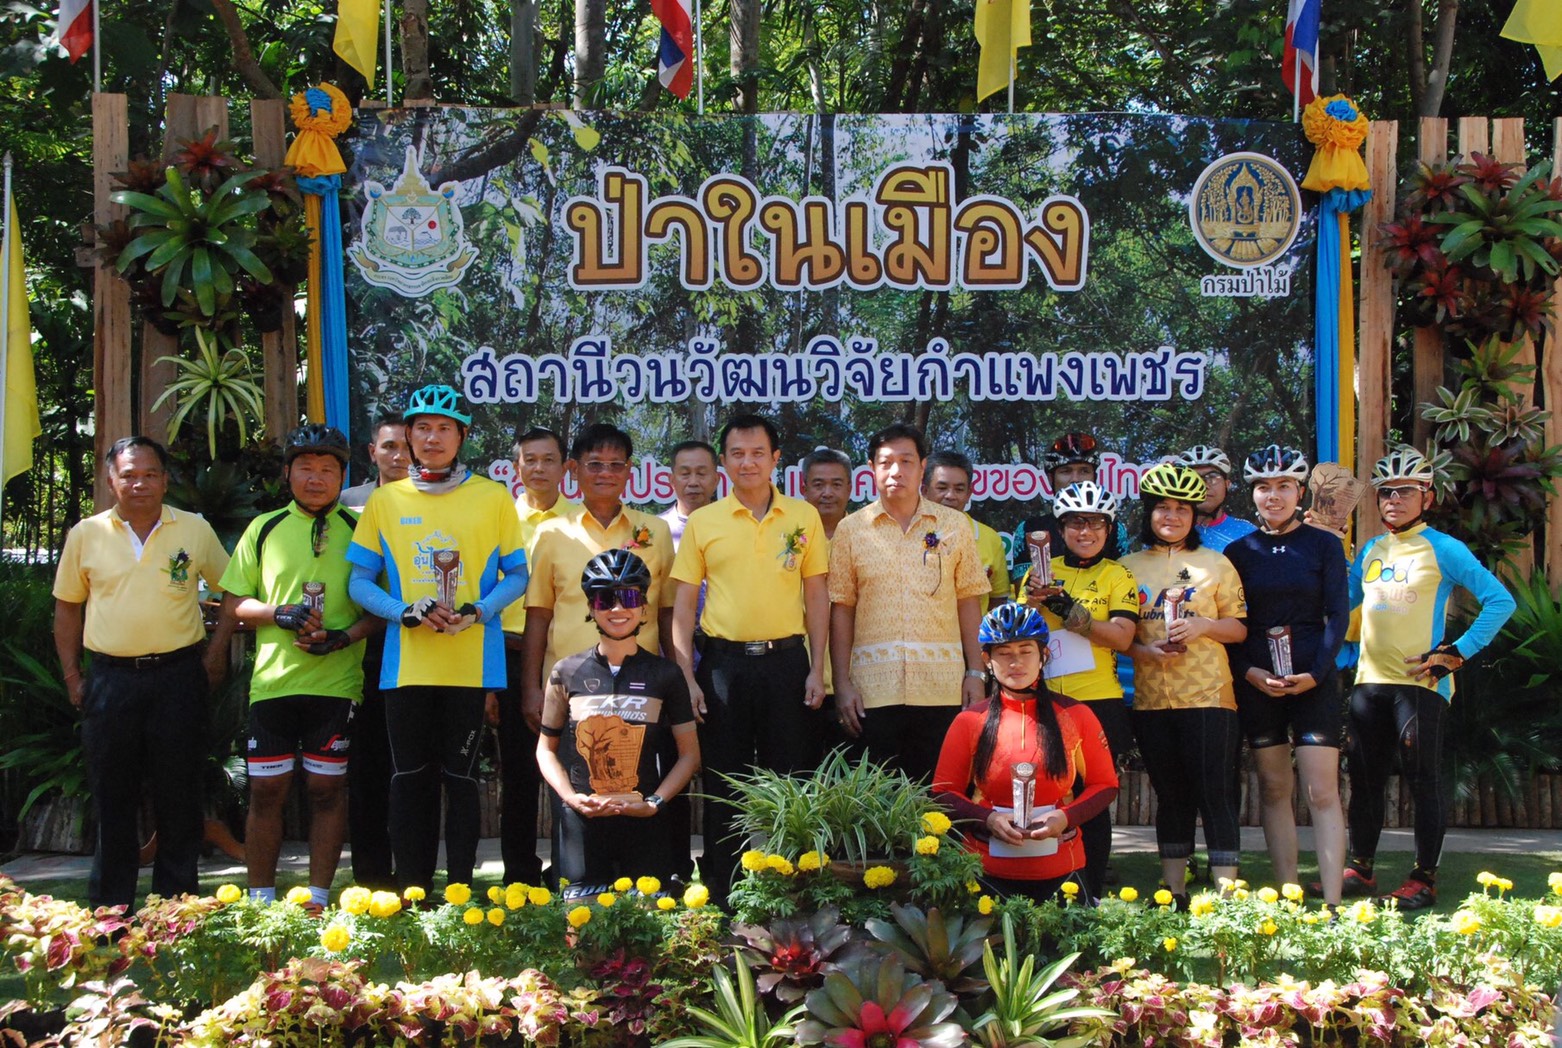 “สวนป่าประชารัฐ เพื่อความสุขของคนไทย” กรมป่าไม้ สถานีวนวัฒนวิจัยกำแพงเพชร